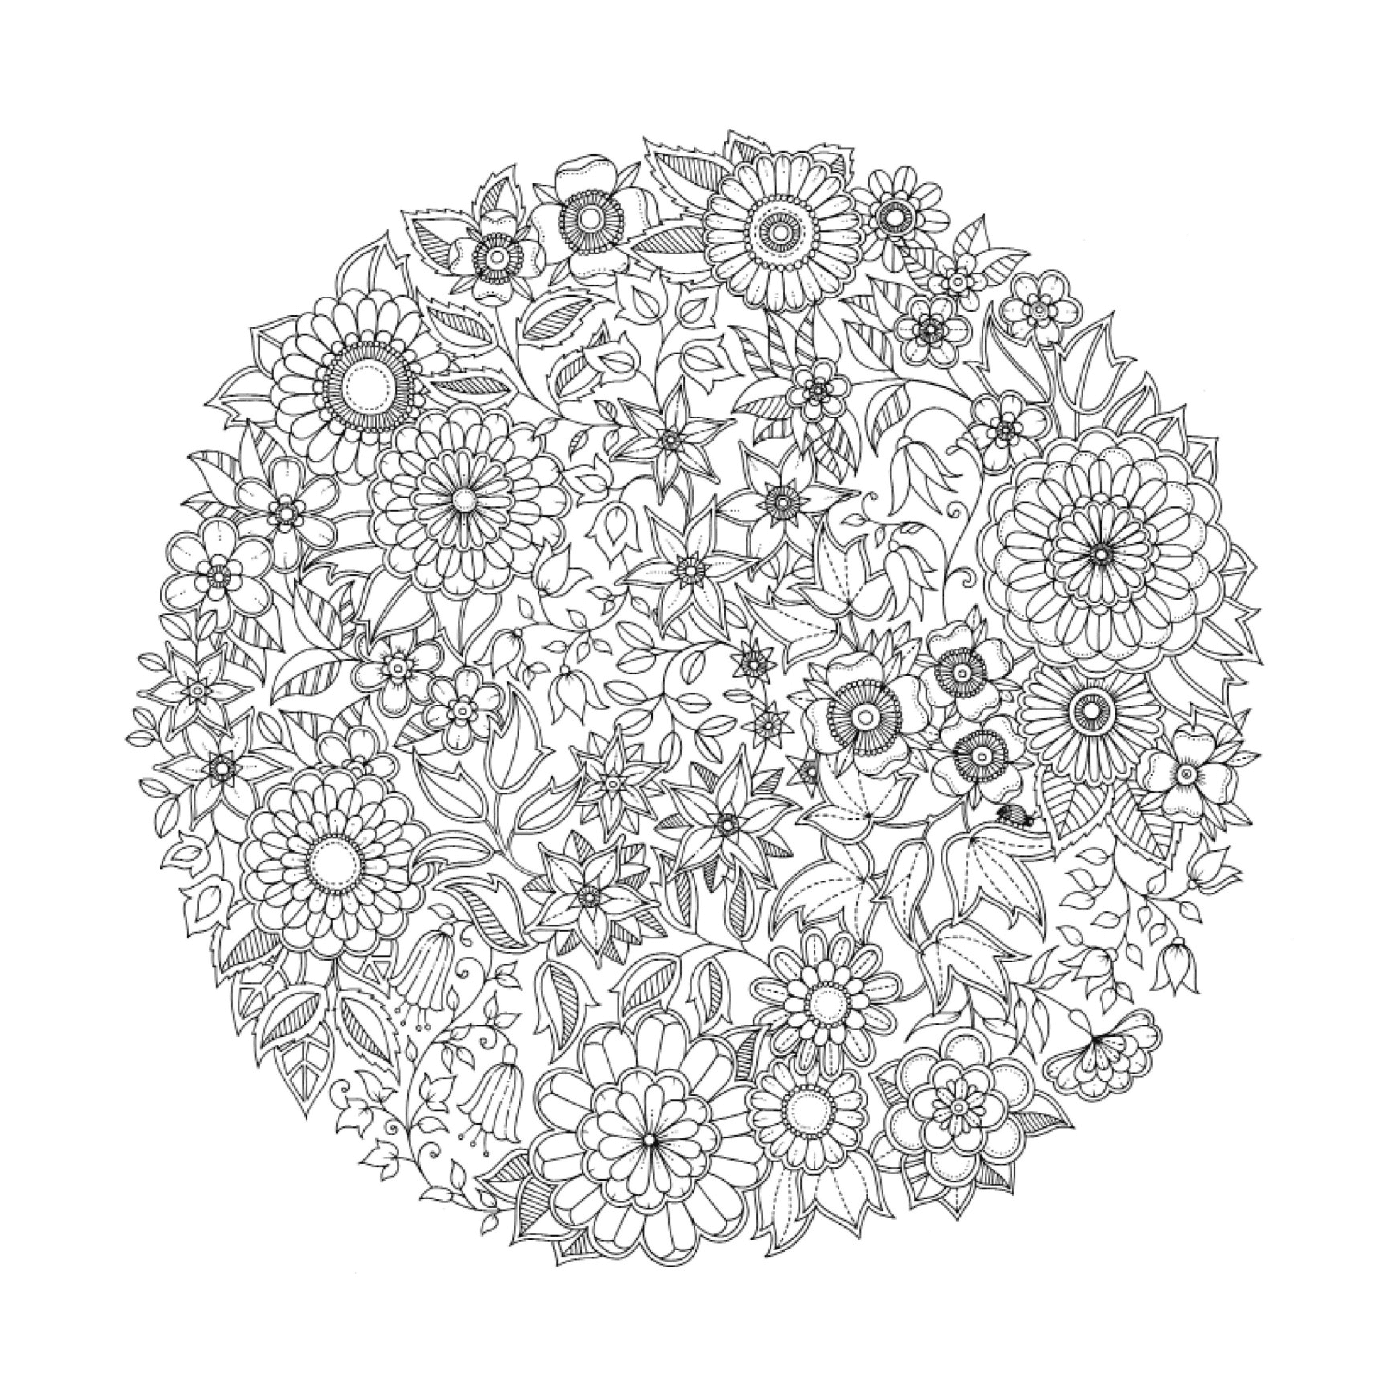   Modèle circulaire de fleurs en noir et blanc 